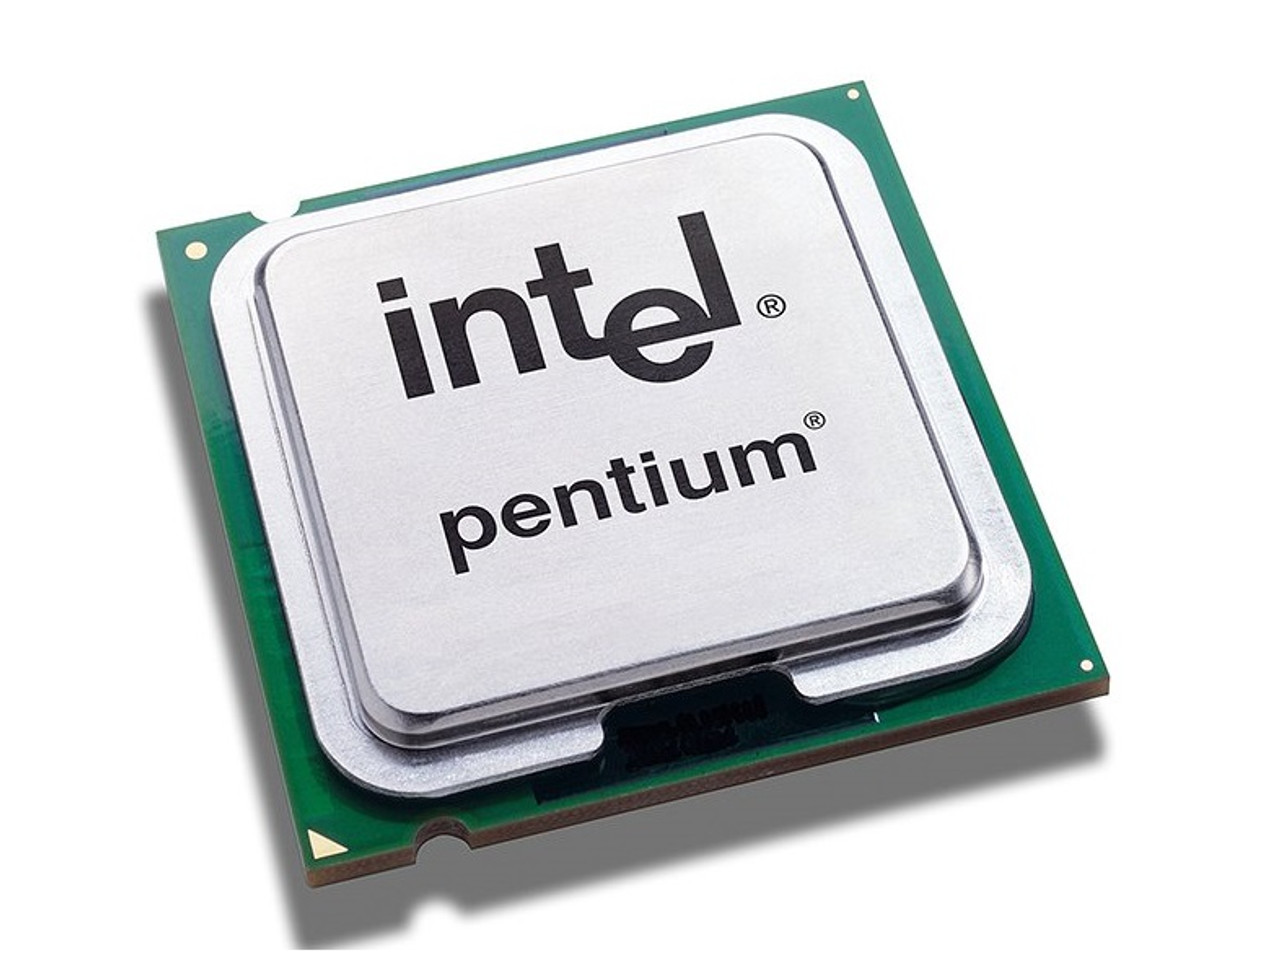 1405V2 - Intel Pentium 1405 v2 Dual Core 1.40GHz 5.00GT/s DMI 6MB L3 Cache Socket LGA1356 Processor